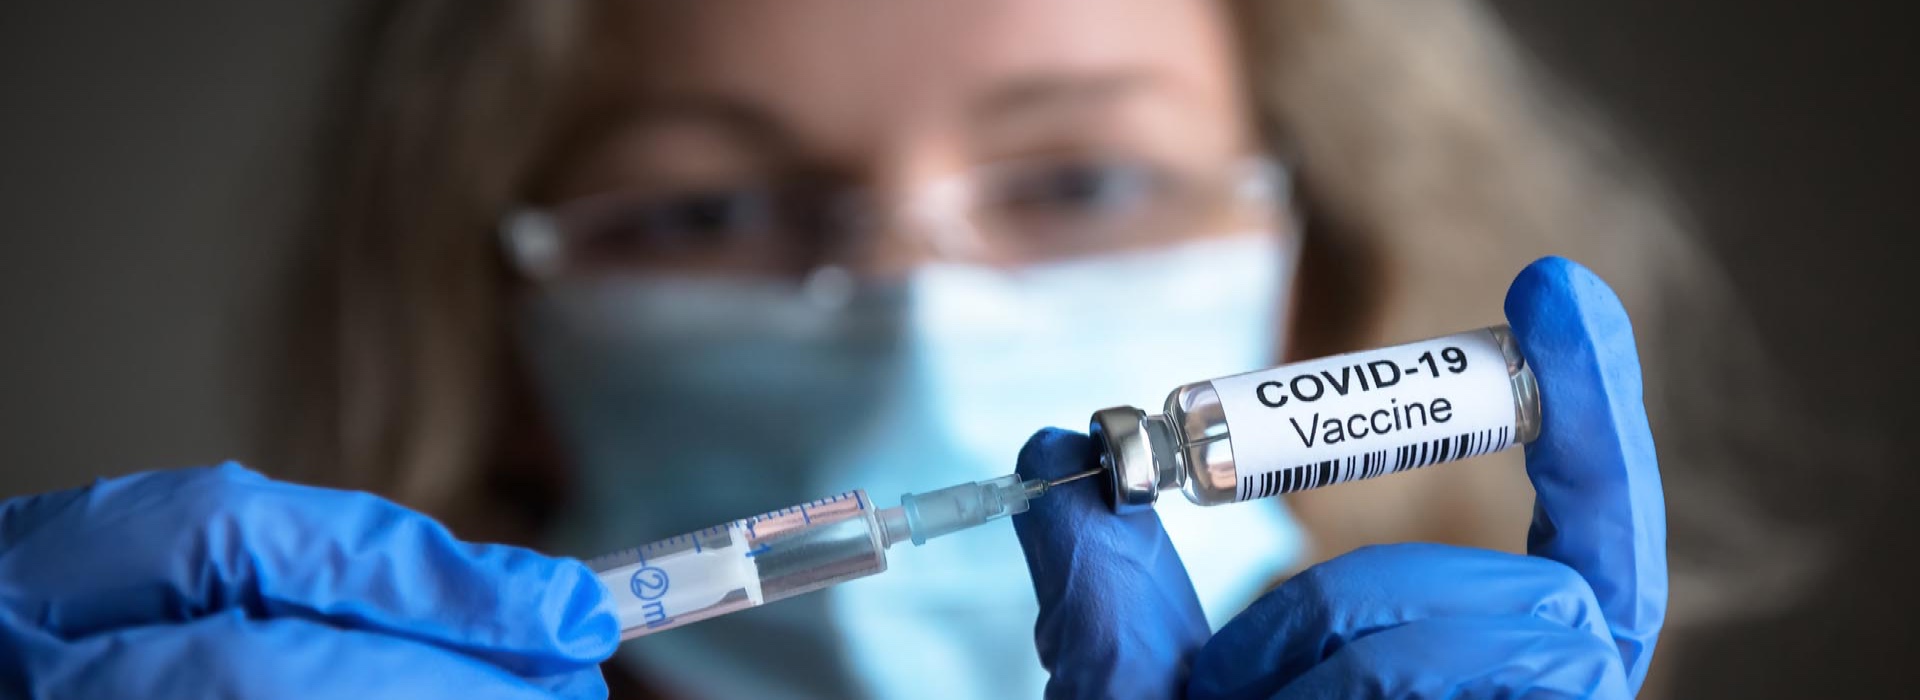 Gli effetti collaterali dei vaccini anti-Covid: lo studio su 100 milioni di persone